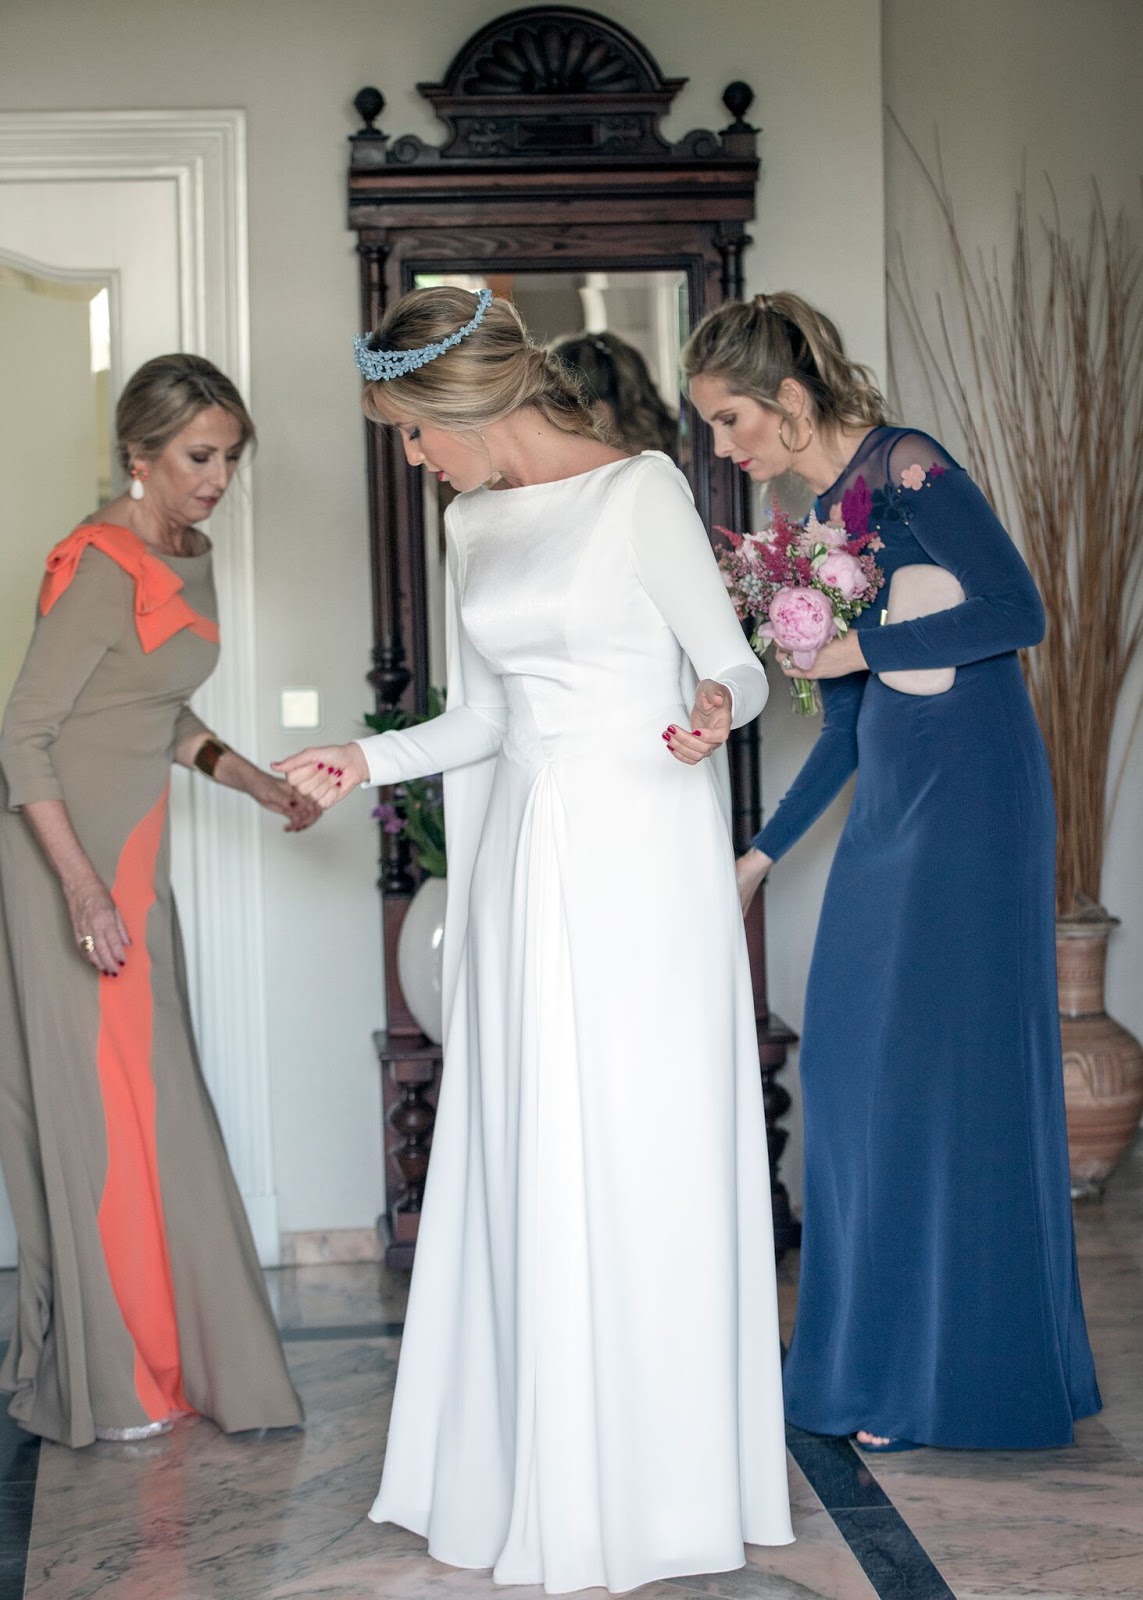 HECHO ENCANTO: La novia de tiara azul